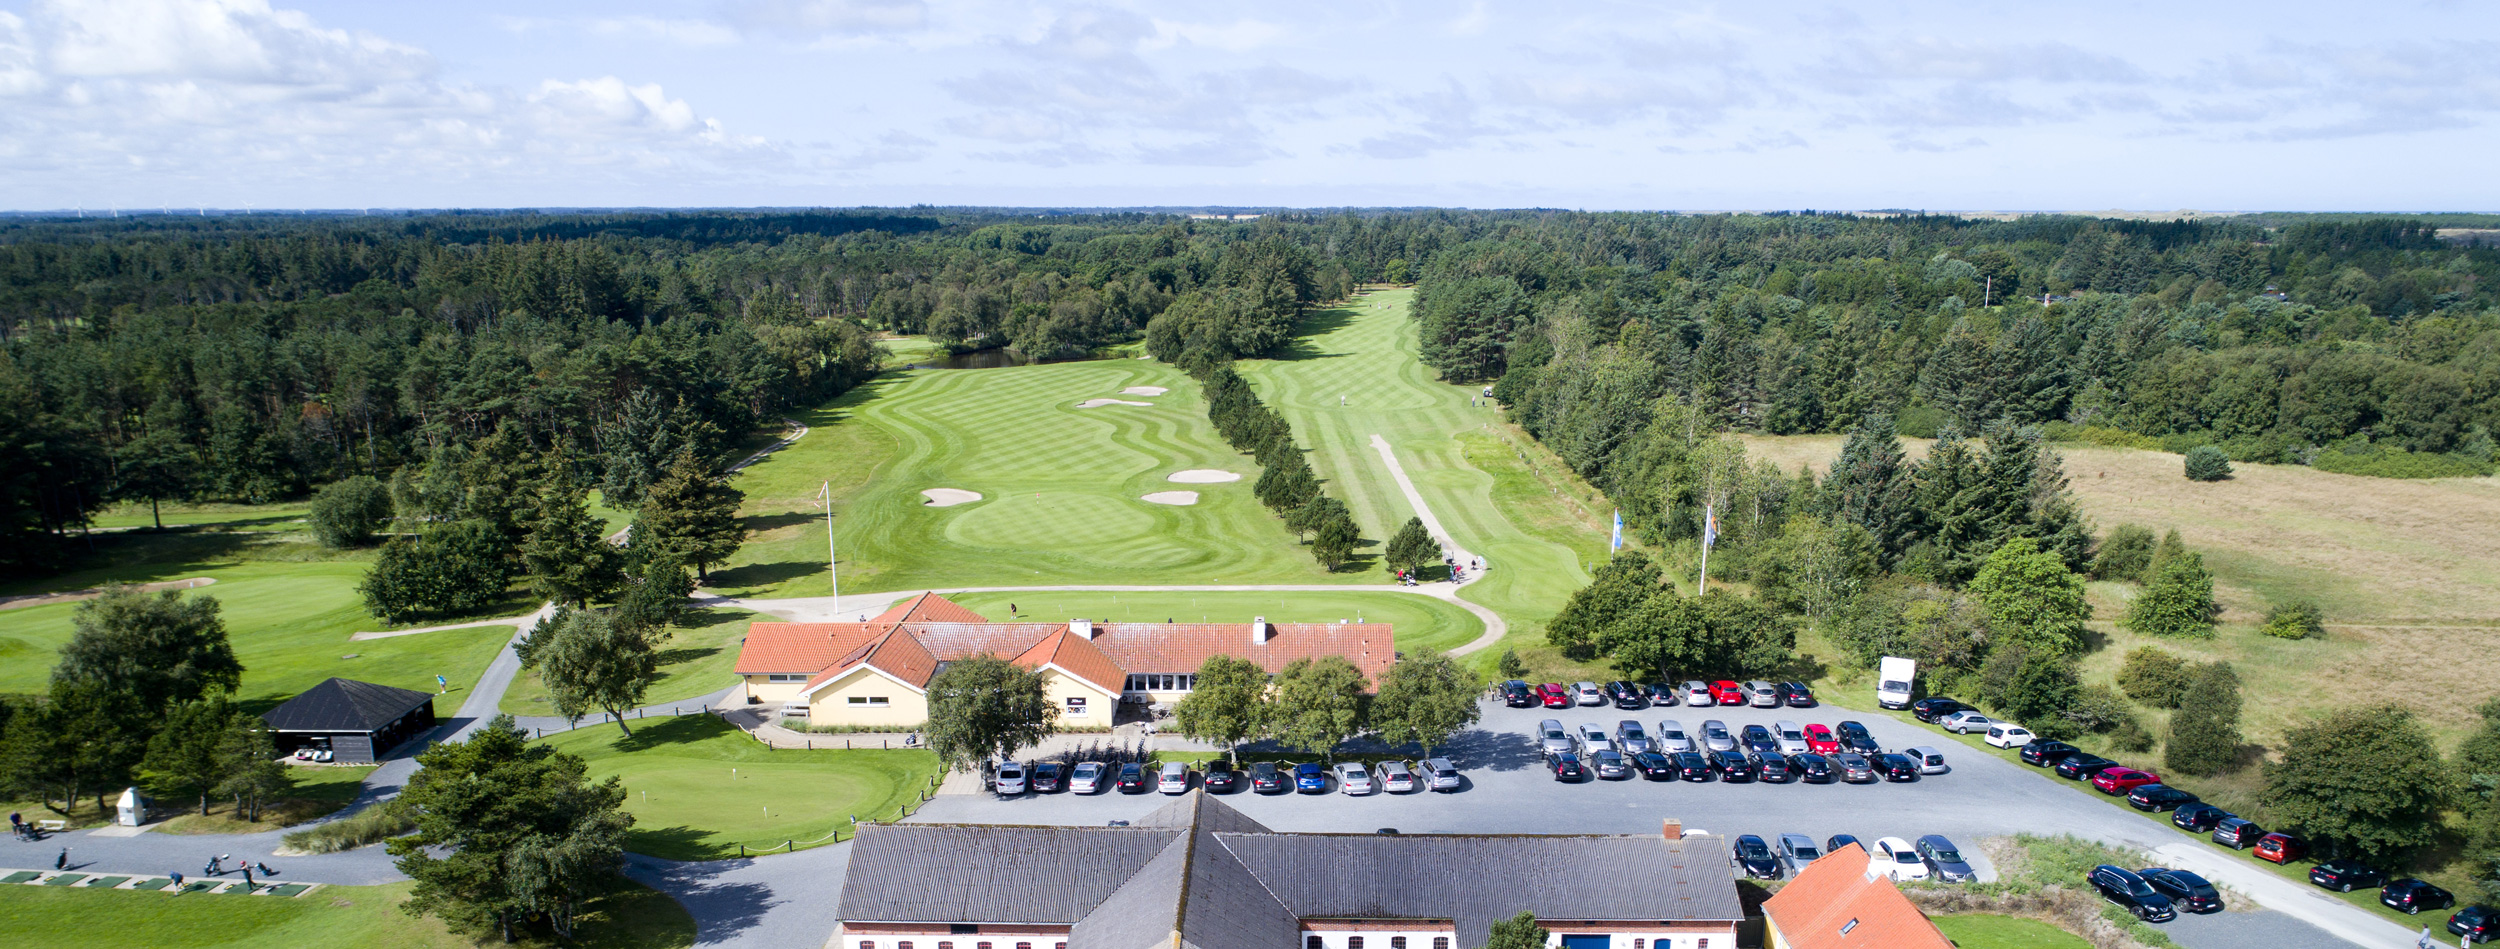 Hvide Klit Golf Hotel | Nordjylland | NordicGolfers